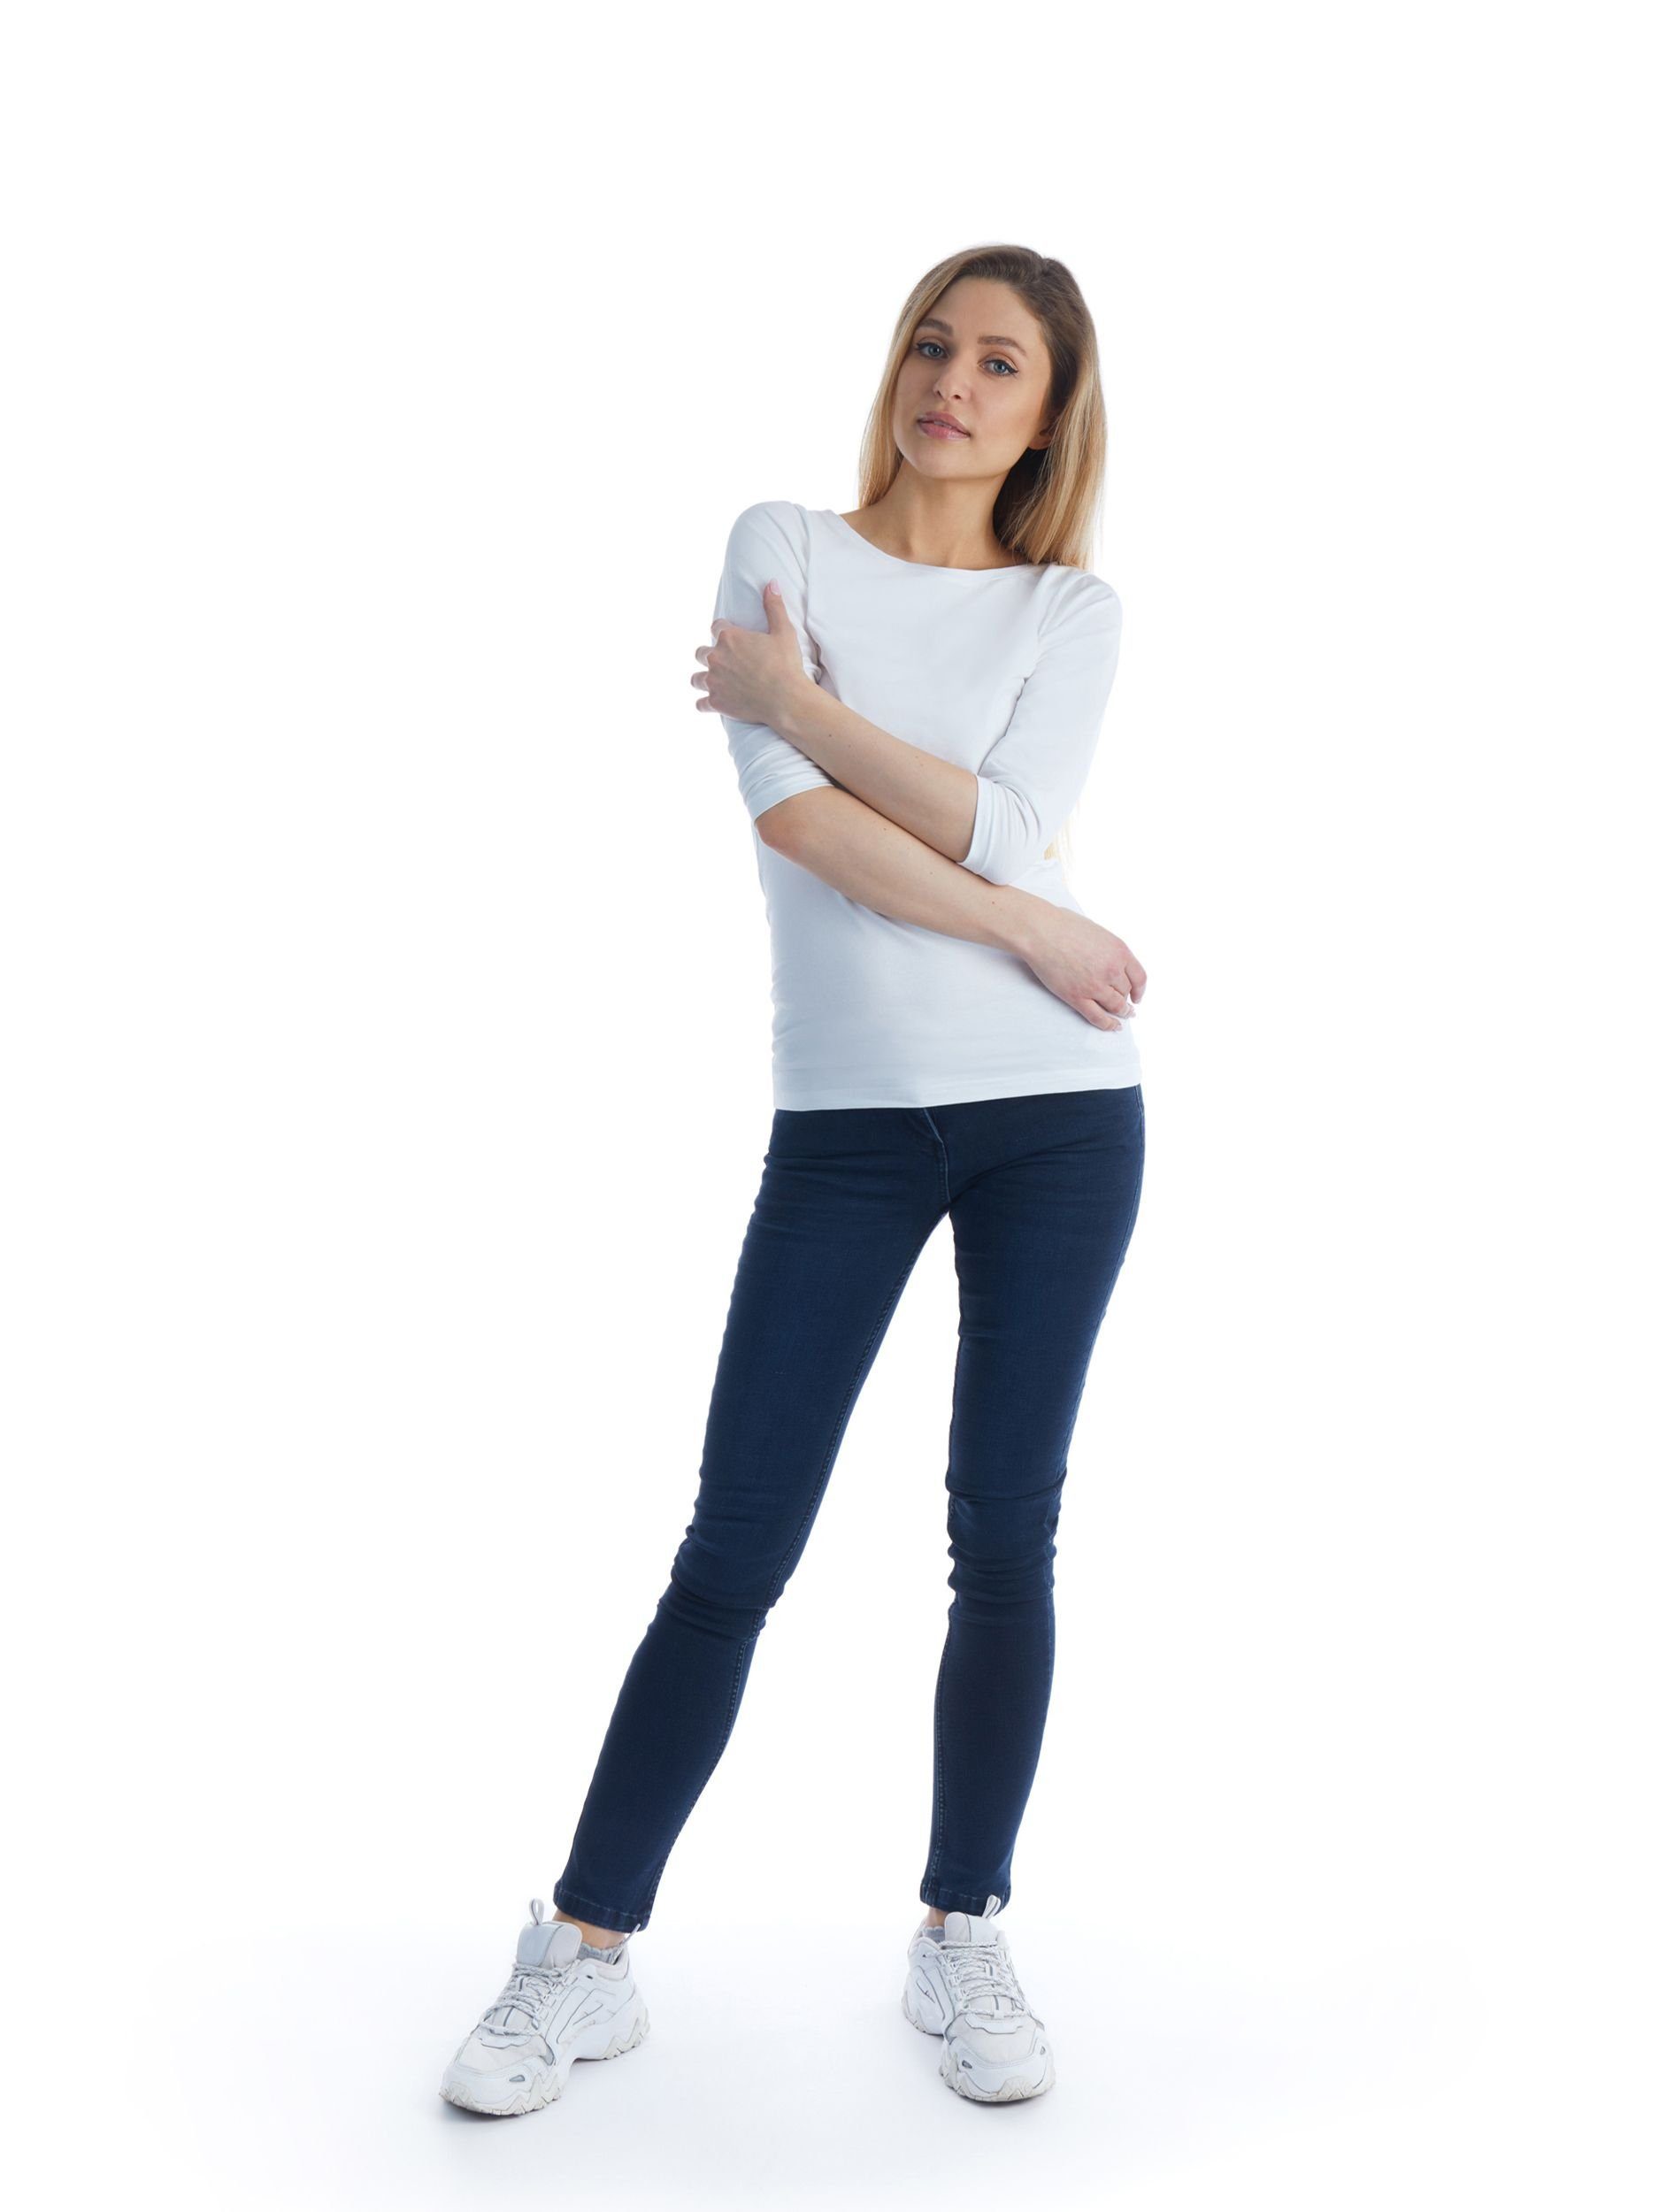 SPLASH COLOR OF 5-Pocket-Jeans